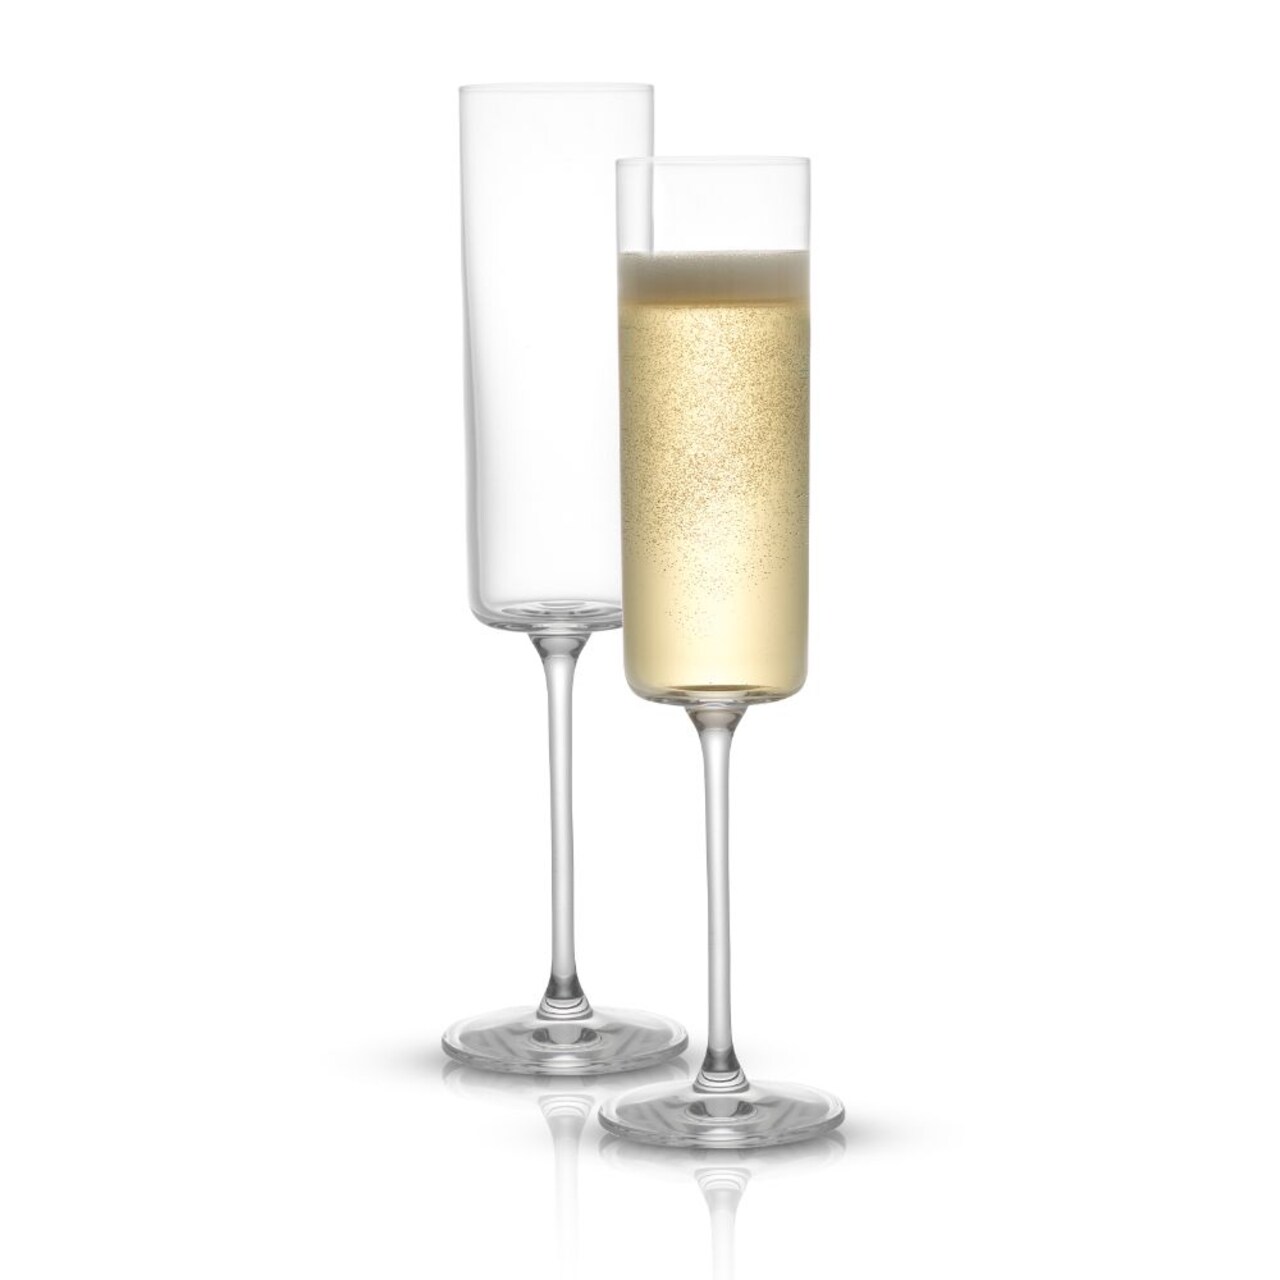 JoyJolt Claire Cyrstal Cylinder Champagne Glasses - 5.7 oz - Set